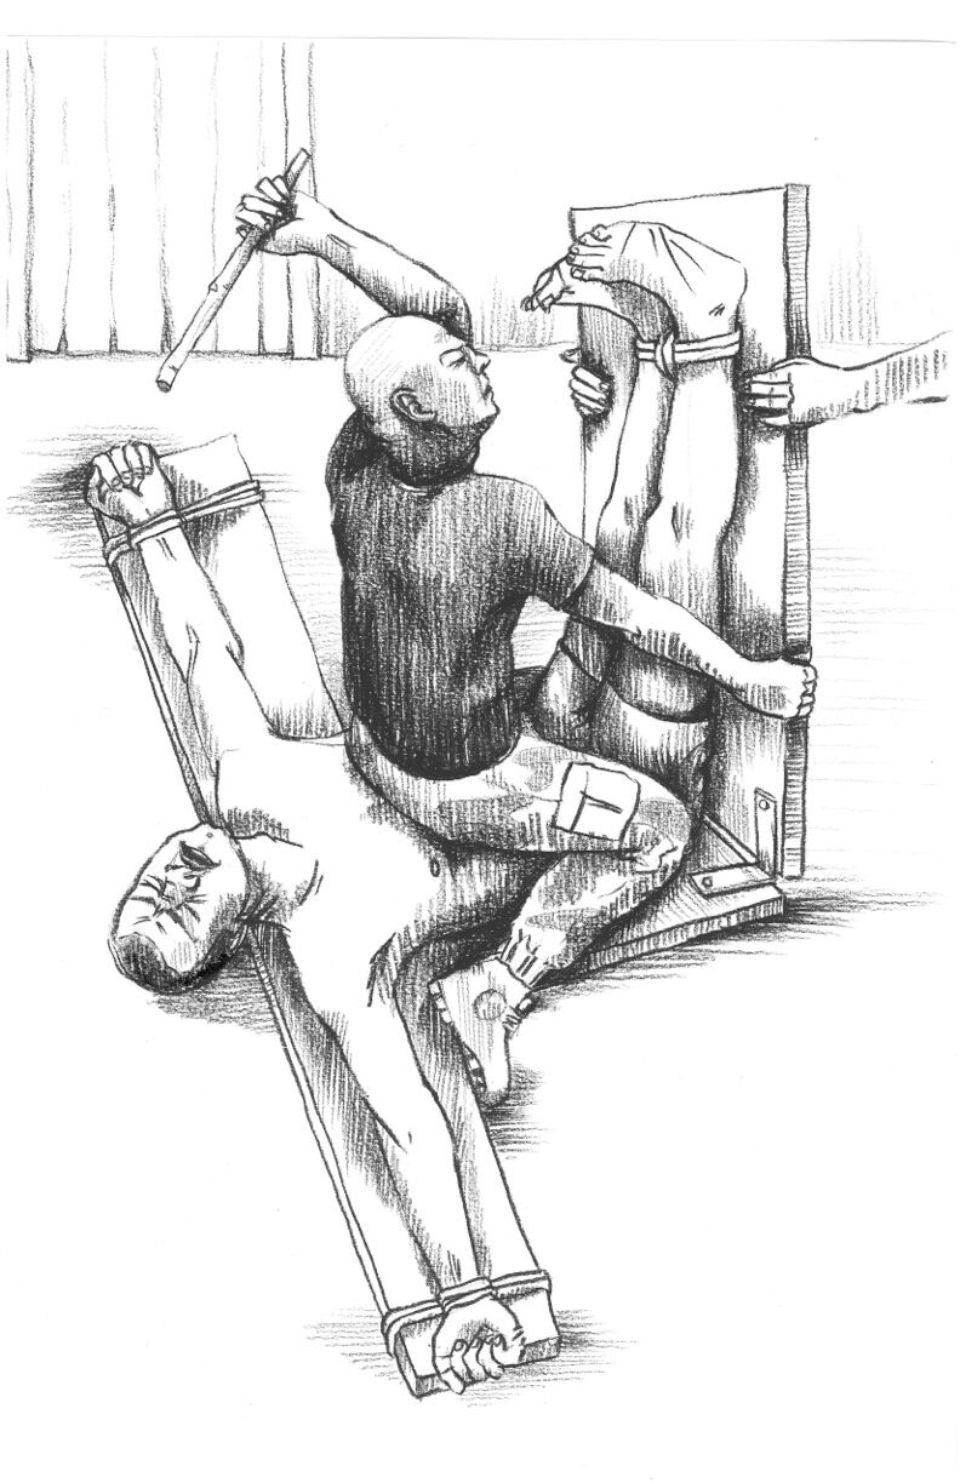 Réalisés en 2012 par un dessinateur anonyme, ces croquis illustrent des scènes de torture en prison. 